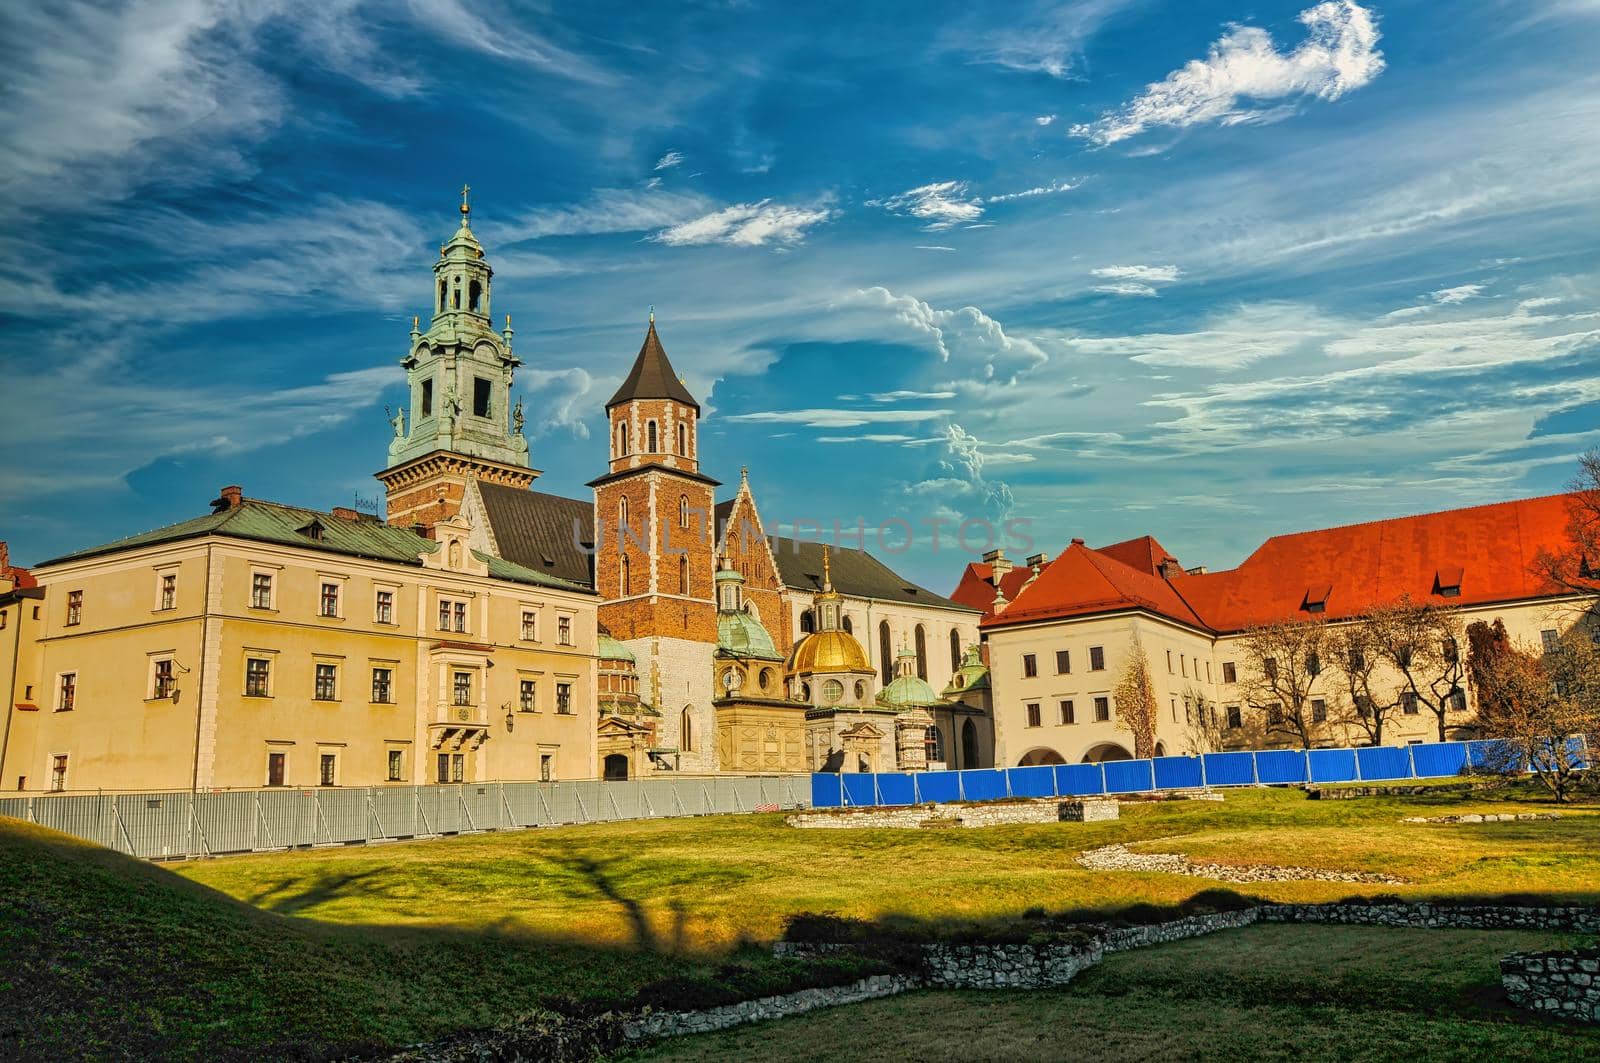 Wawel castle in Krakow of Poland by feelmytravel